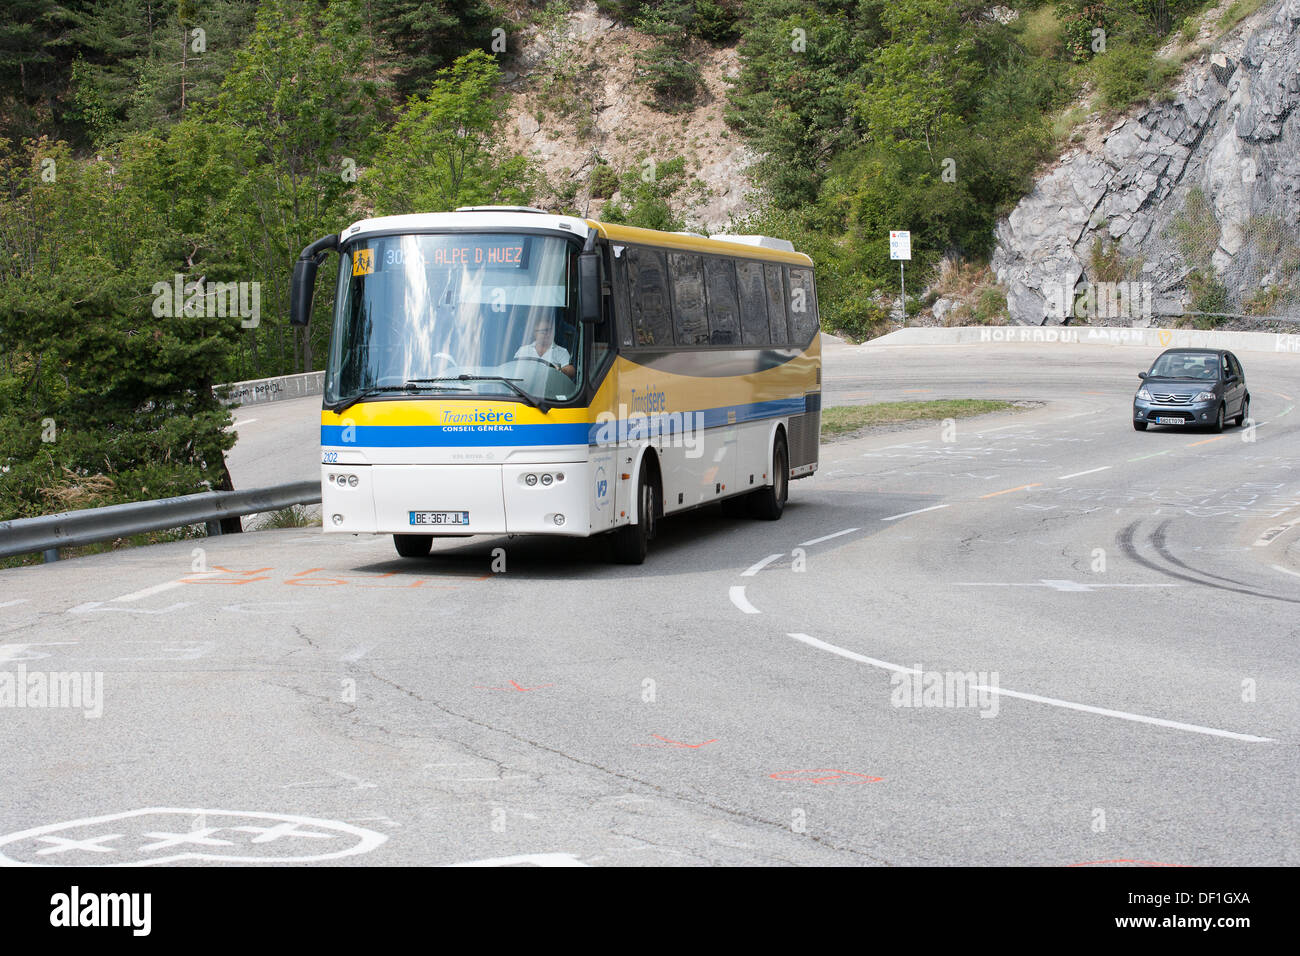 Autobus bus barrière routière virage serré rock face Banque D'Images